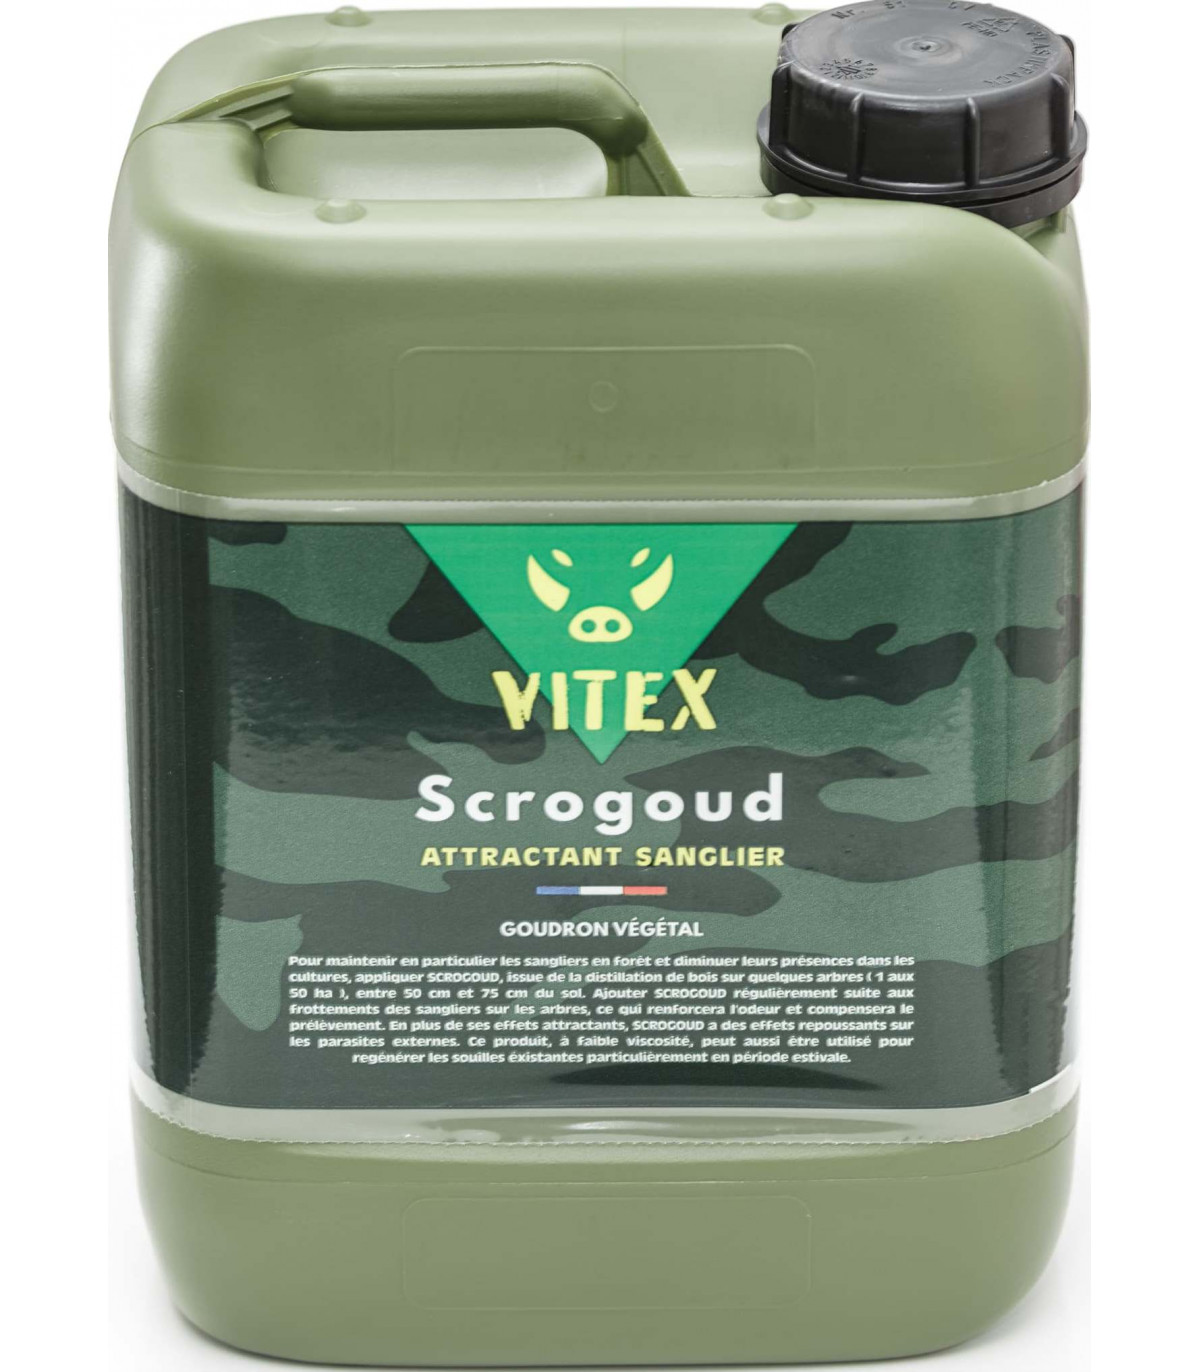 Goudron Vegetal Dit De Norvege Vitex 5 litres + Attractif Sanglier